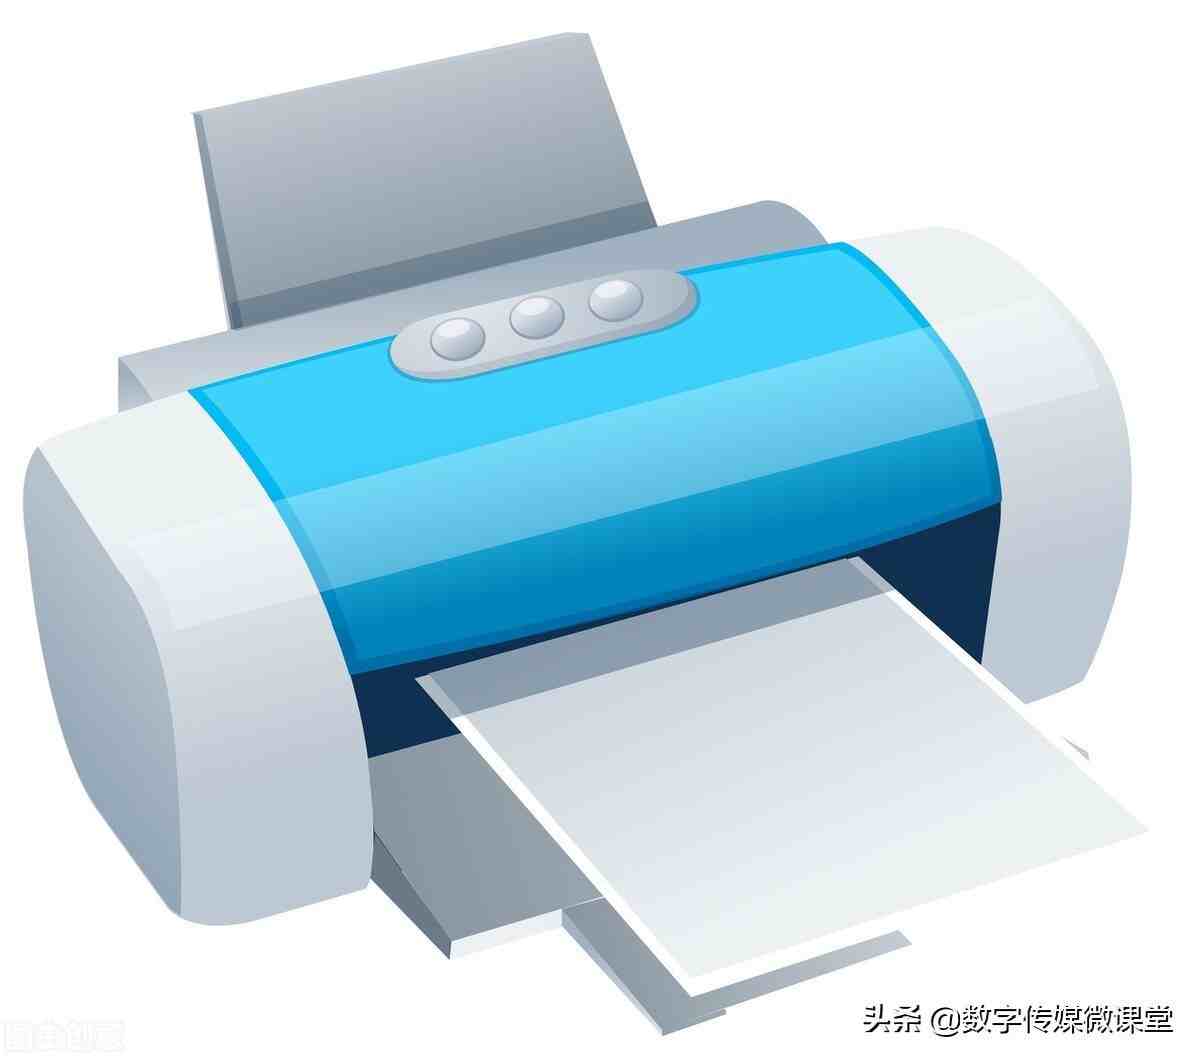 打印机安装失败好吗，怎么打印机安装失败